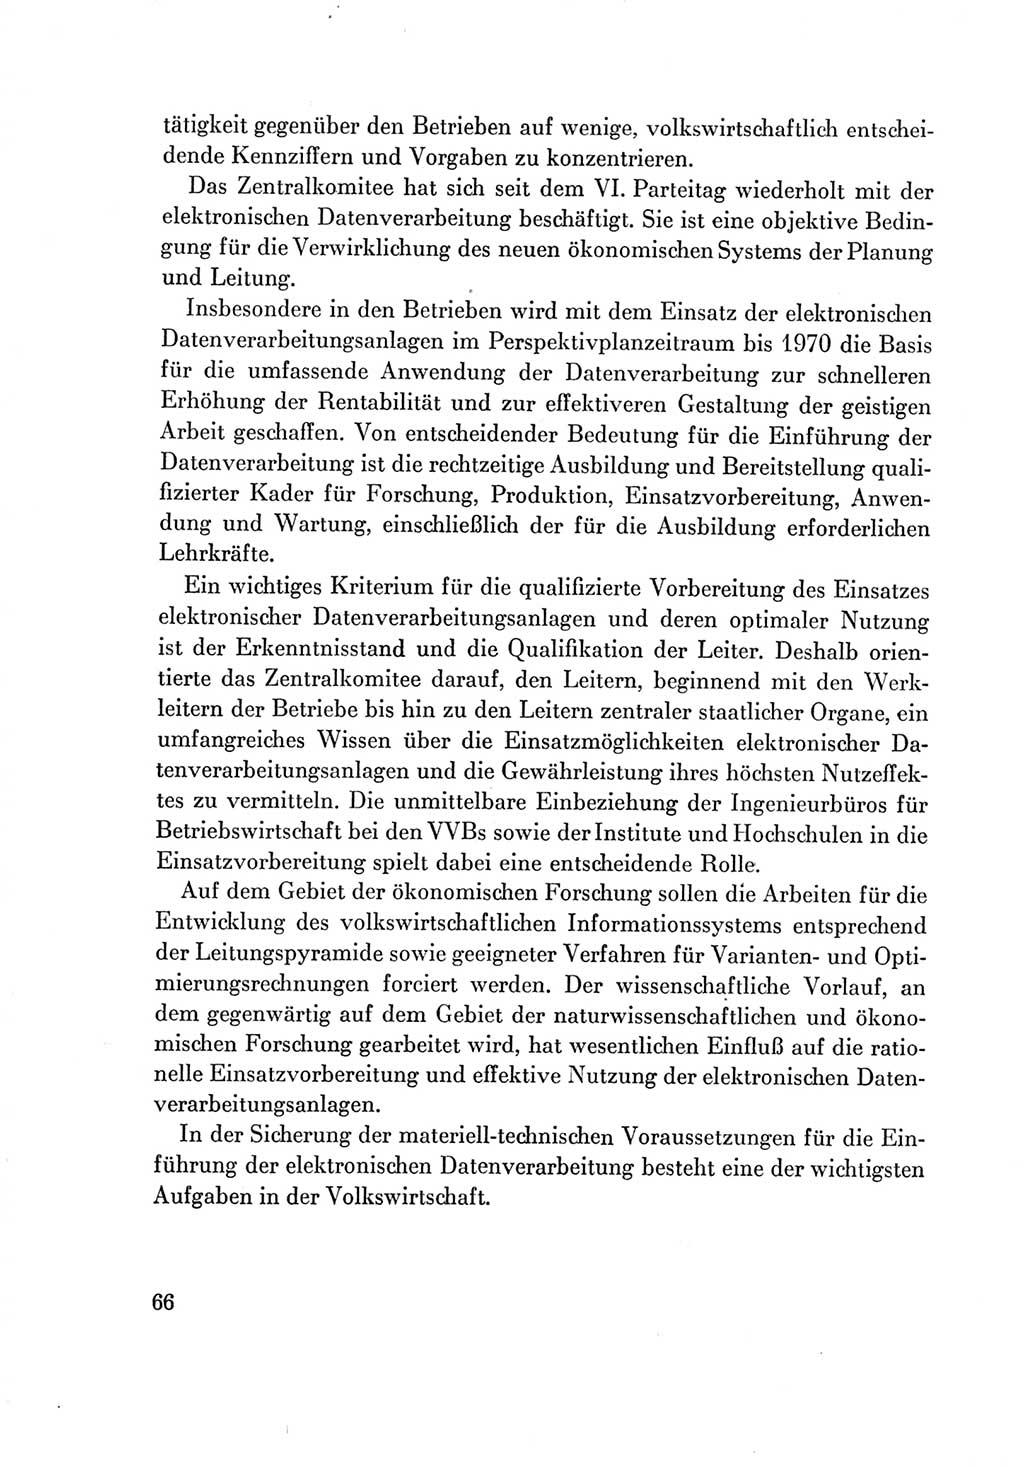 Protokoll der Verhandlungen des Ⅶ. Parteitages der Sozialistischen Einheitspartei Deutschlands (SED) [Deutsche Demokratische Republik (DDR)] 1967, Band Ⅳ, Seite 66 (Prot. Verh. Ⅶ. PT SED DDR 1967, Bd. Ⅳ, S. 66)